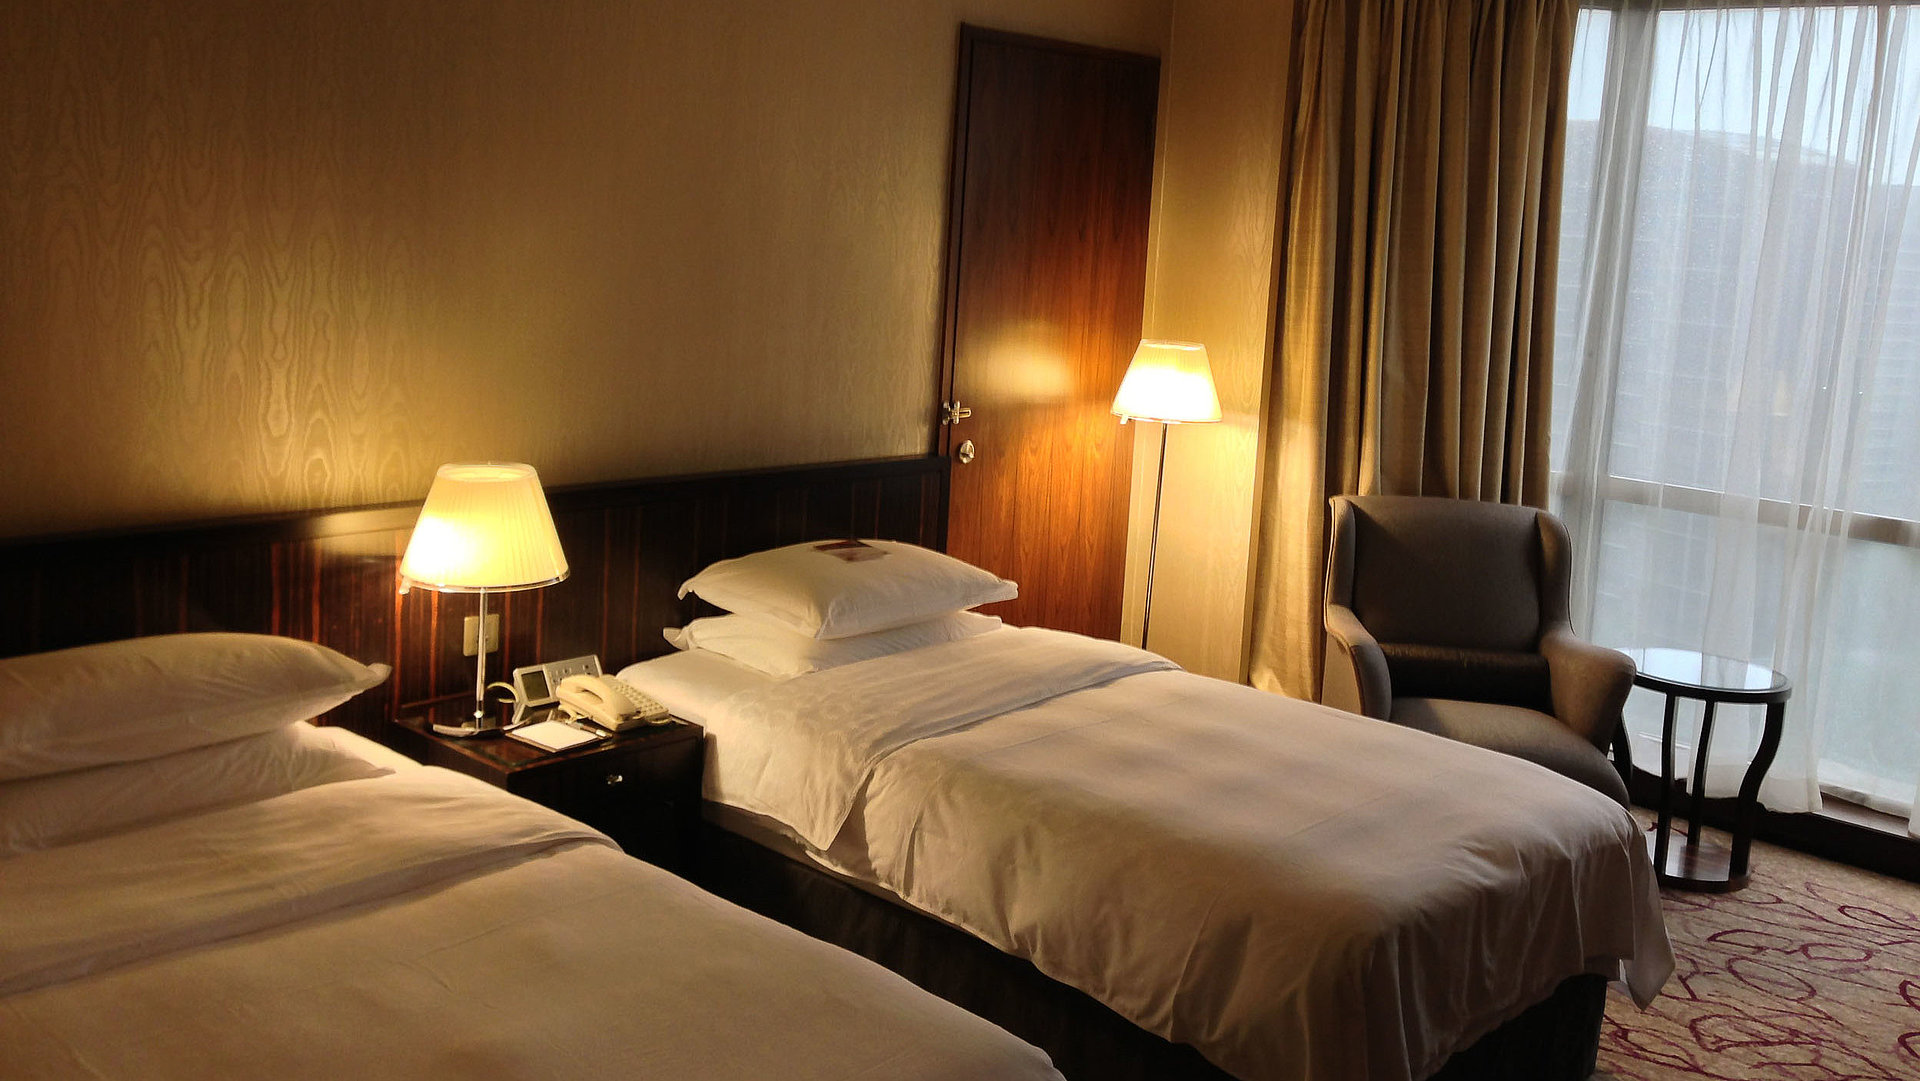 Pauschalangebote Unterkunft in Kempten im Allgäu - sehr ordentliches Hotelzimmer mit zwei Betten, warmer Nachtlampe und Gardinen